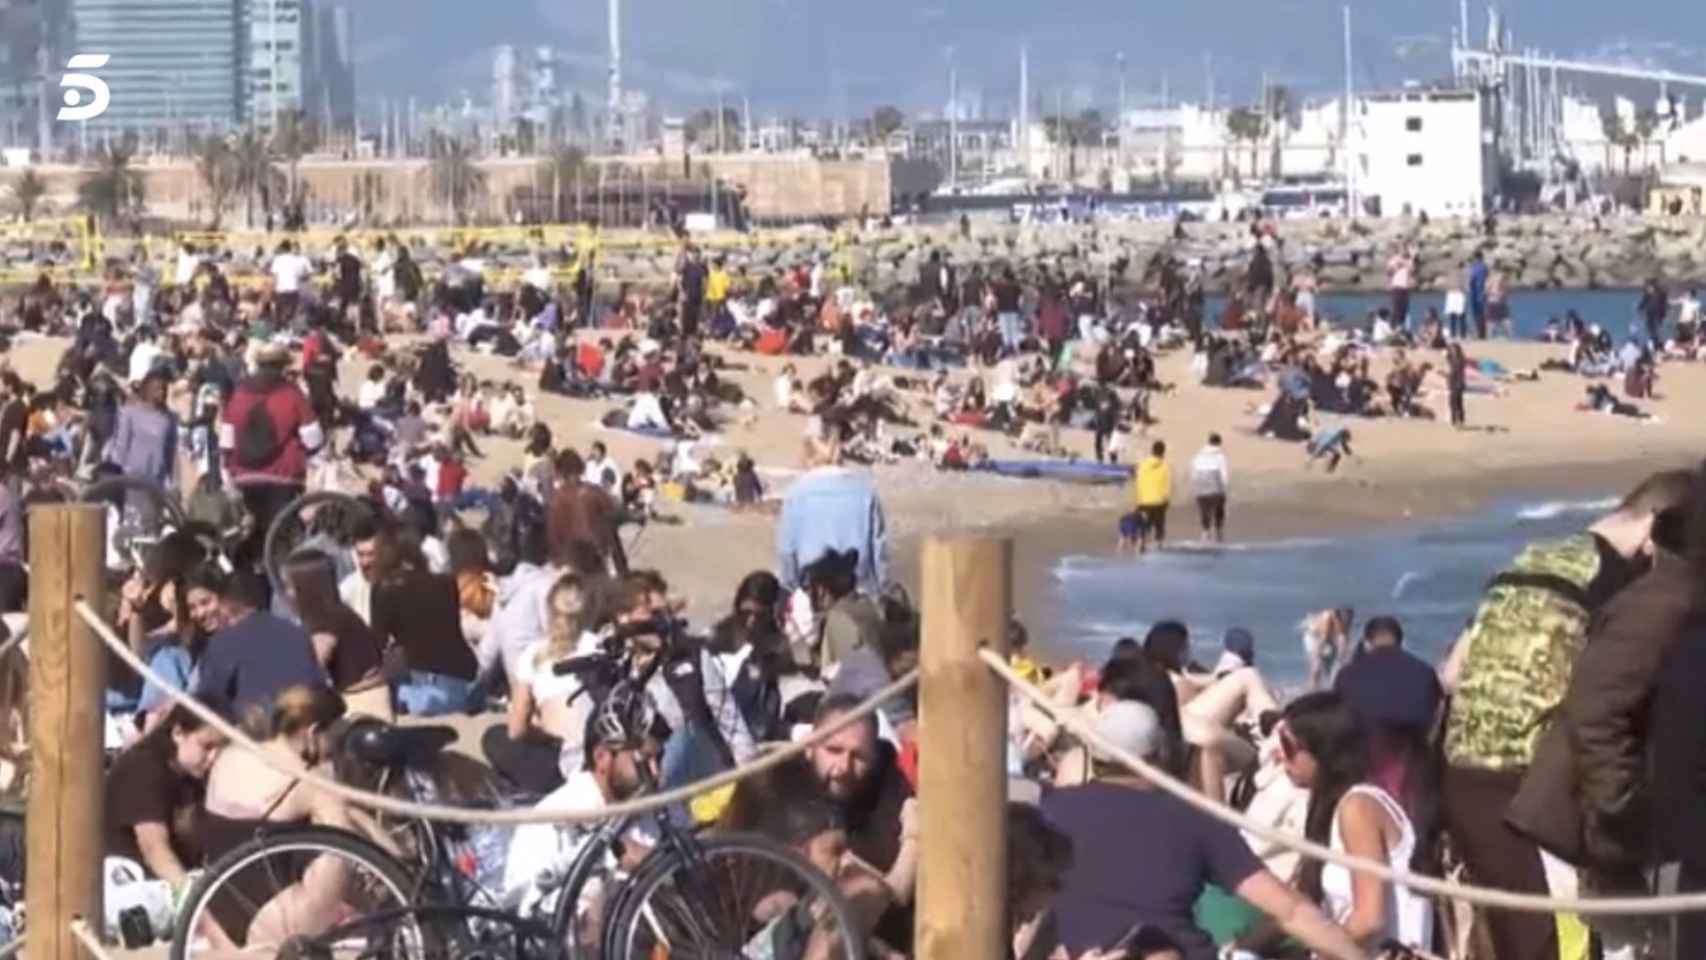 La playa de Barcelona plagada de gente / RR.SS.